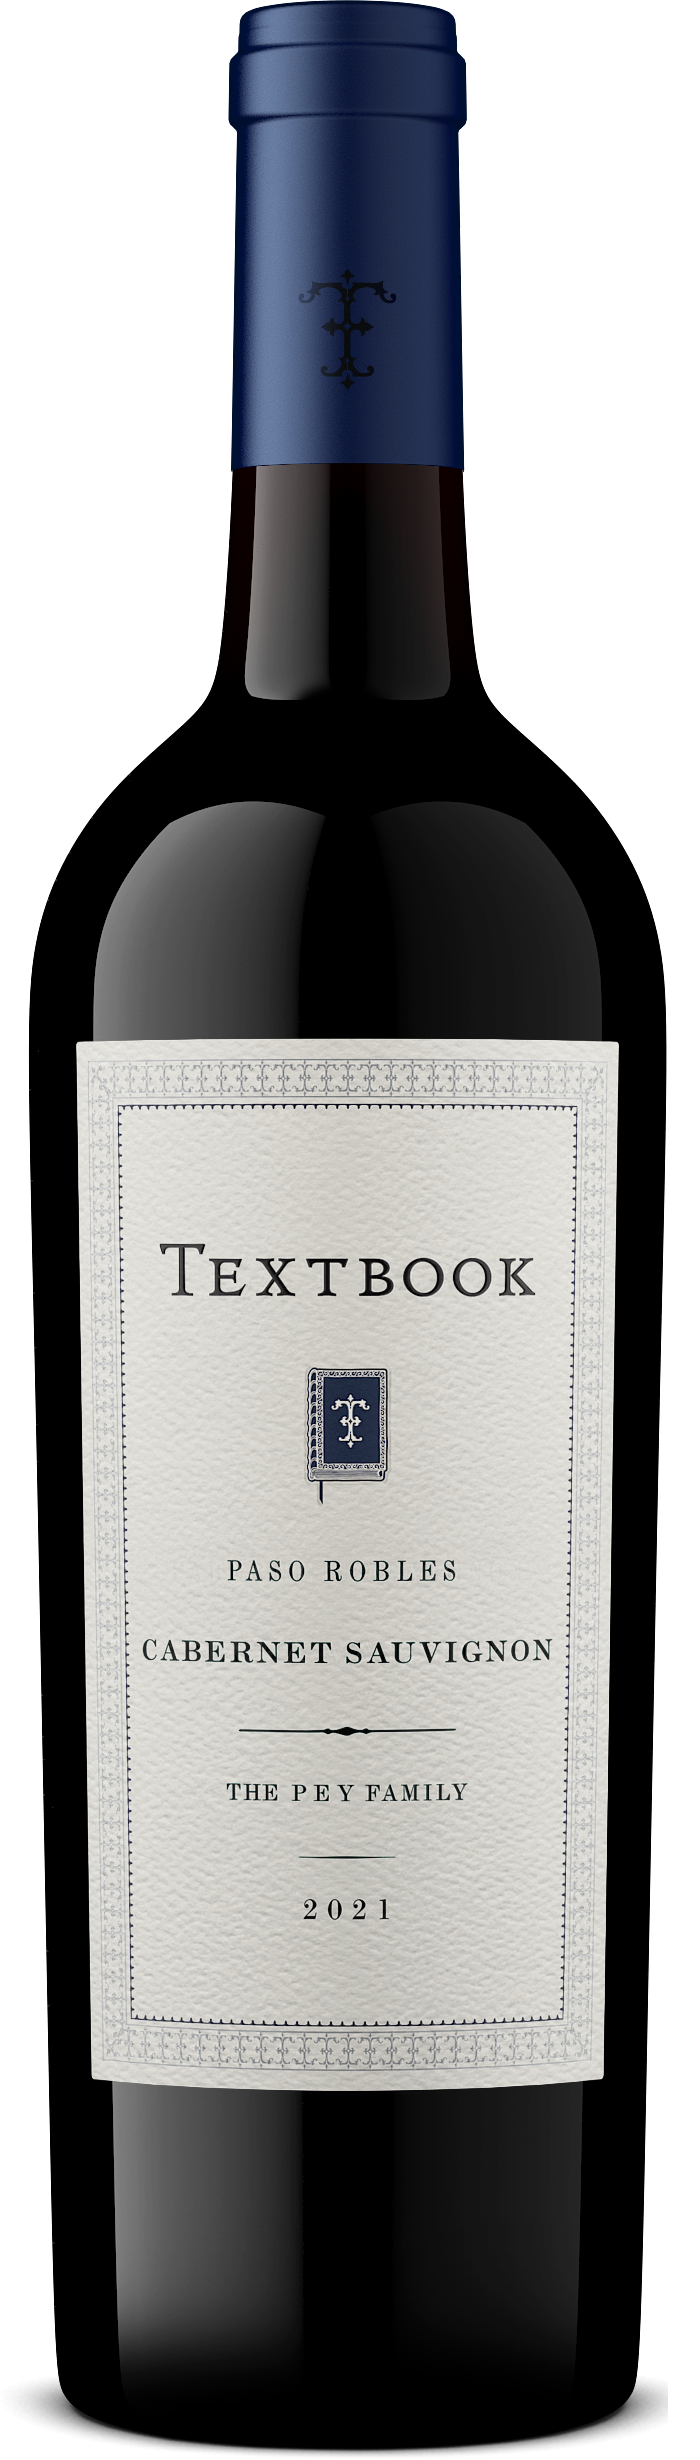 TEXTBOOK 2021 Cabernet Sauvignon Paso Robles Bottle Shot for Wine Shop